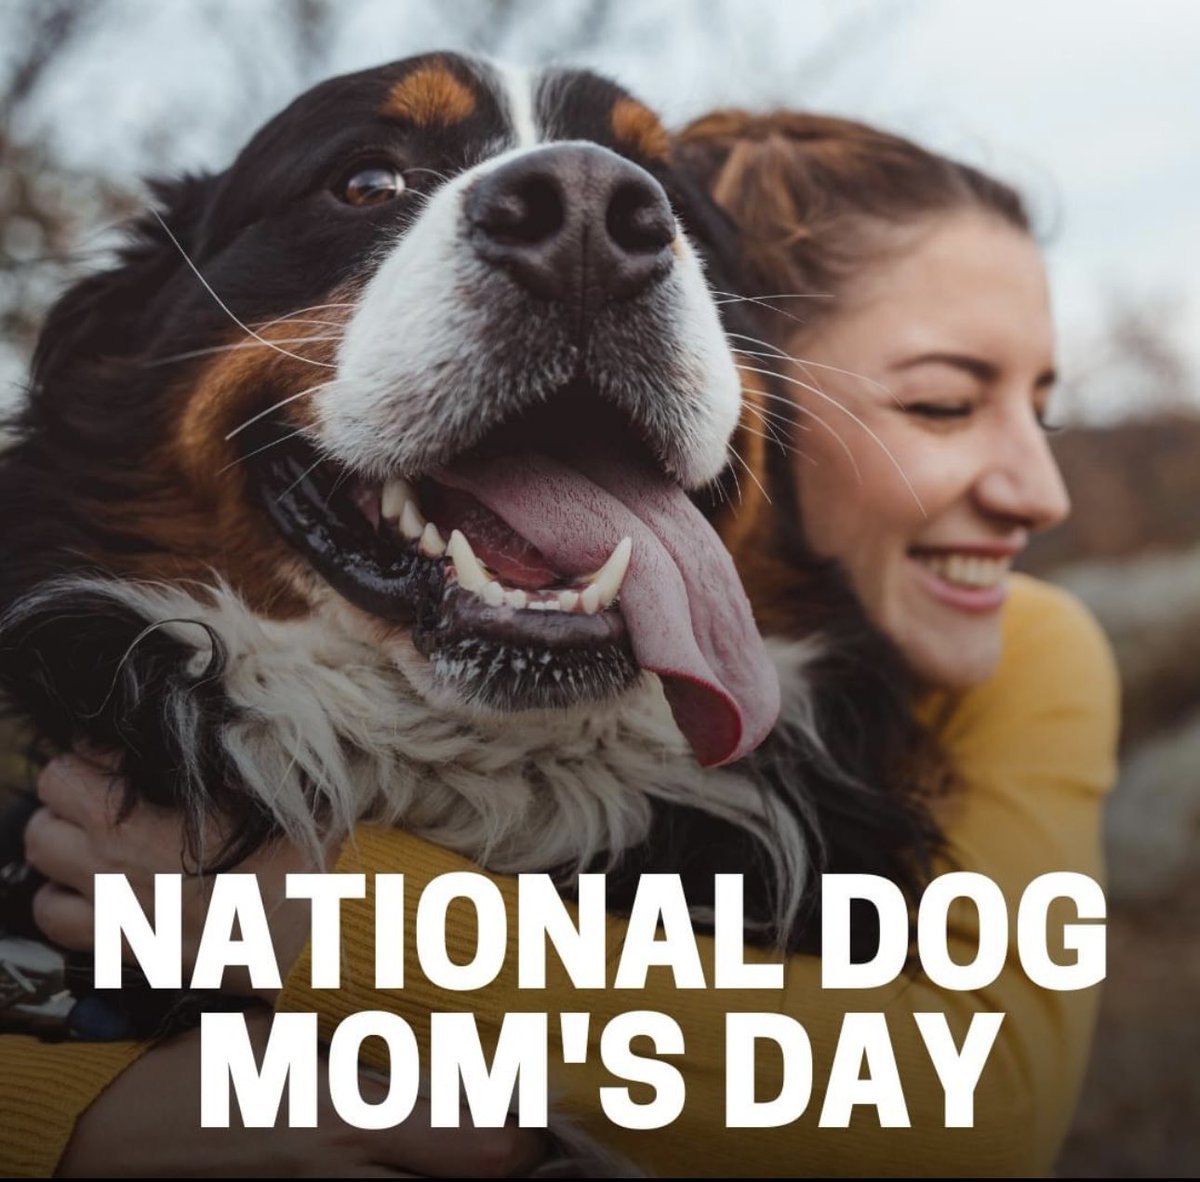 Happy National Dog Mom’s Day! 🌞🐕🐾

#NationalDogMomsDay  #DogsOfX